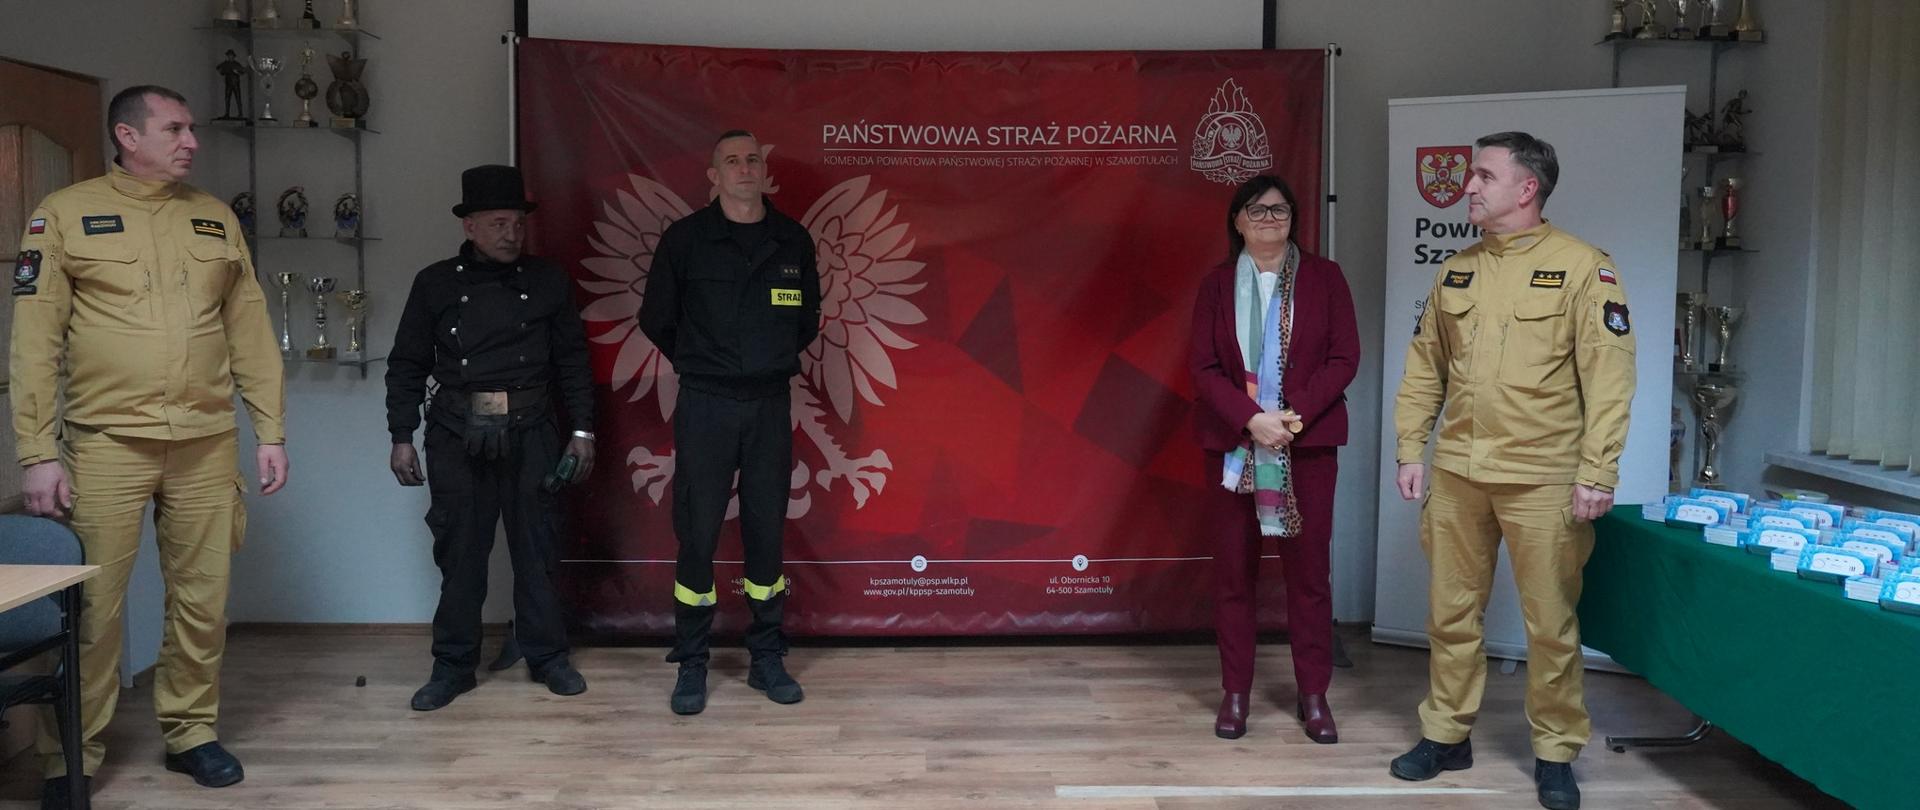 Starosta powiatu szamotulskiego, komendant powiatowy, funkcjonariusz straży i kominiarz na świetlicy, za nimi czerwony baner PSP